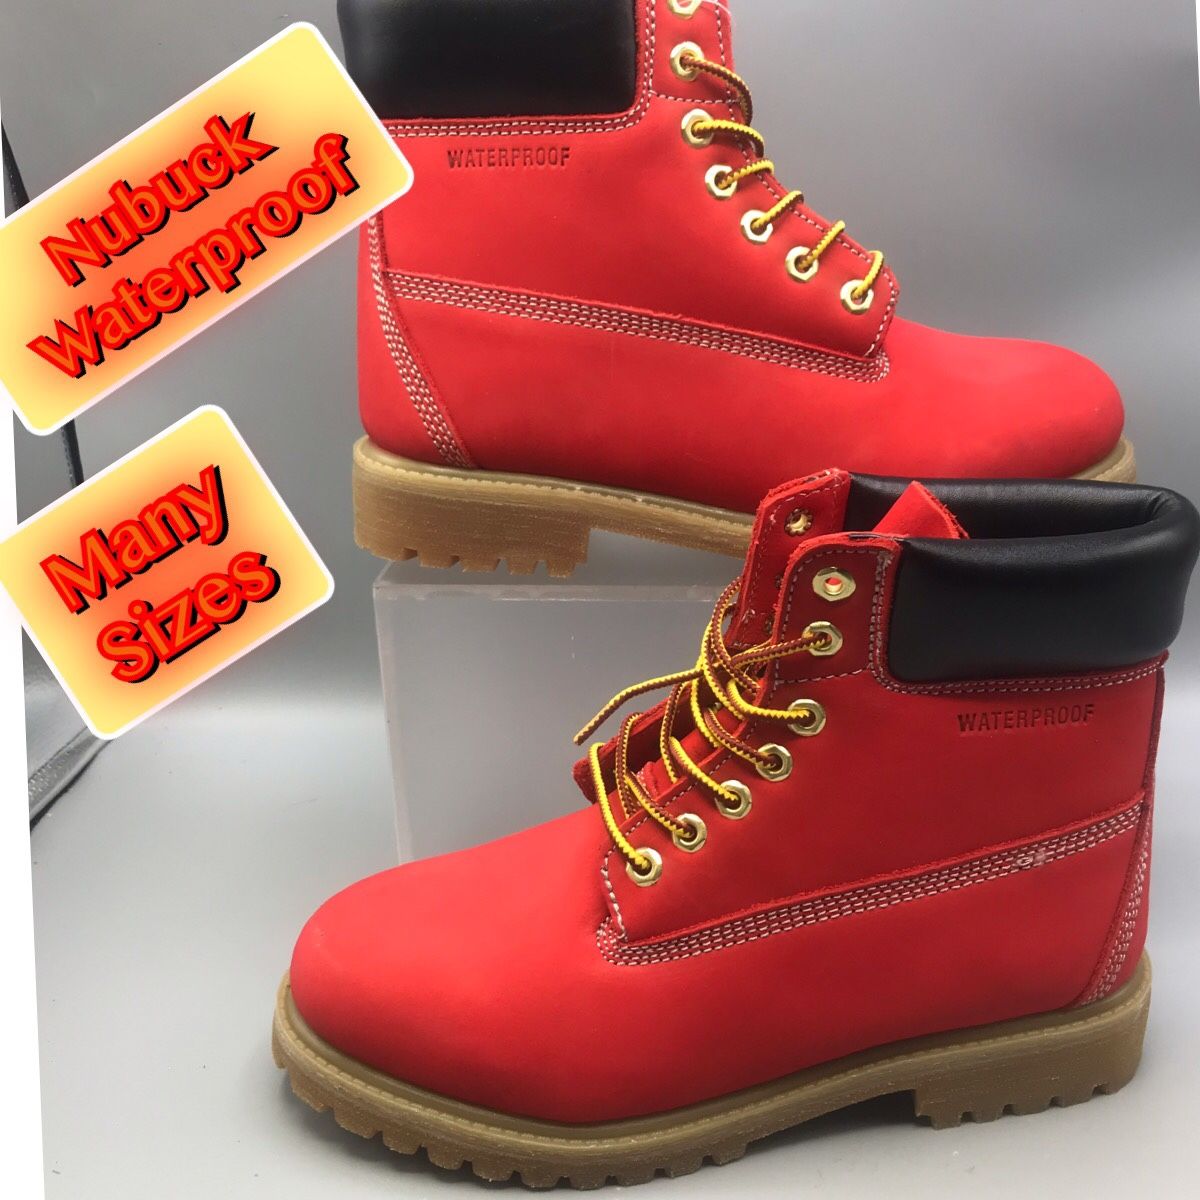 Waterproof Cherry Red Nubuck Men’s Work Boots.